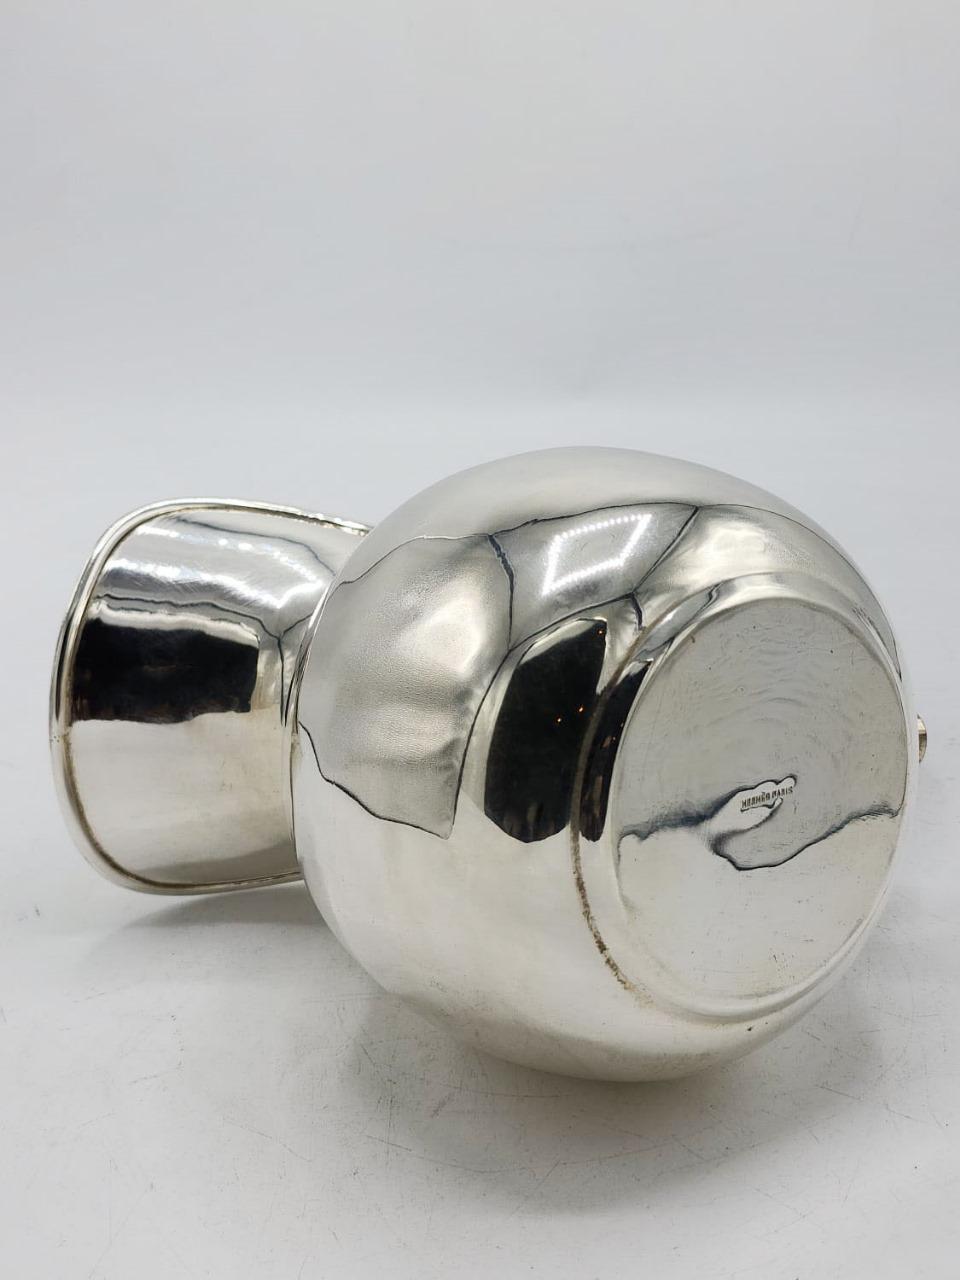 Hermes Paris silberner Metallkrug mit Ledergriff, 20. Jahrhundert

Eleganter Krug mit Ledergriff und einem Stil, der aufgrund der Details viel mit der Moderne verbindet, was ihn zu einem einzigartigen Krug macht.

Maßnahmen:
Höhe:16